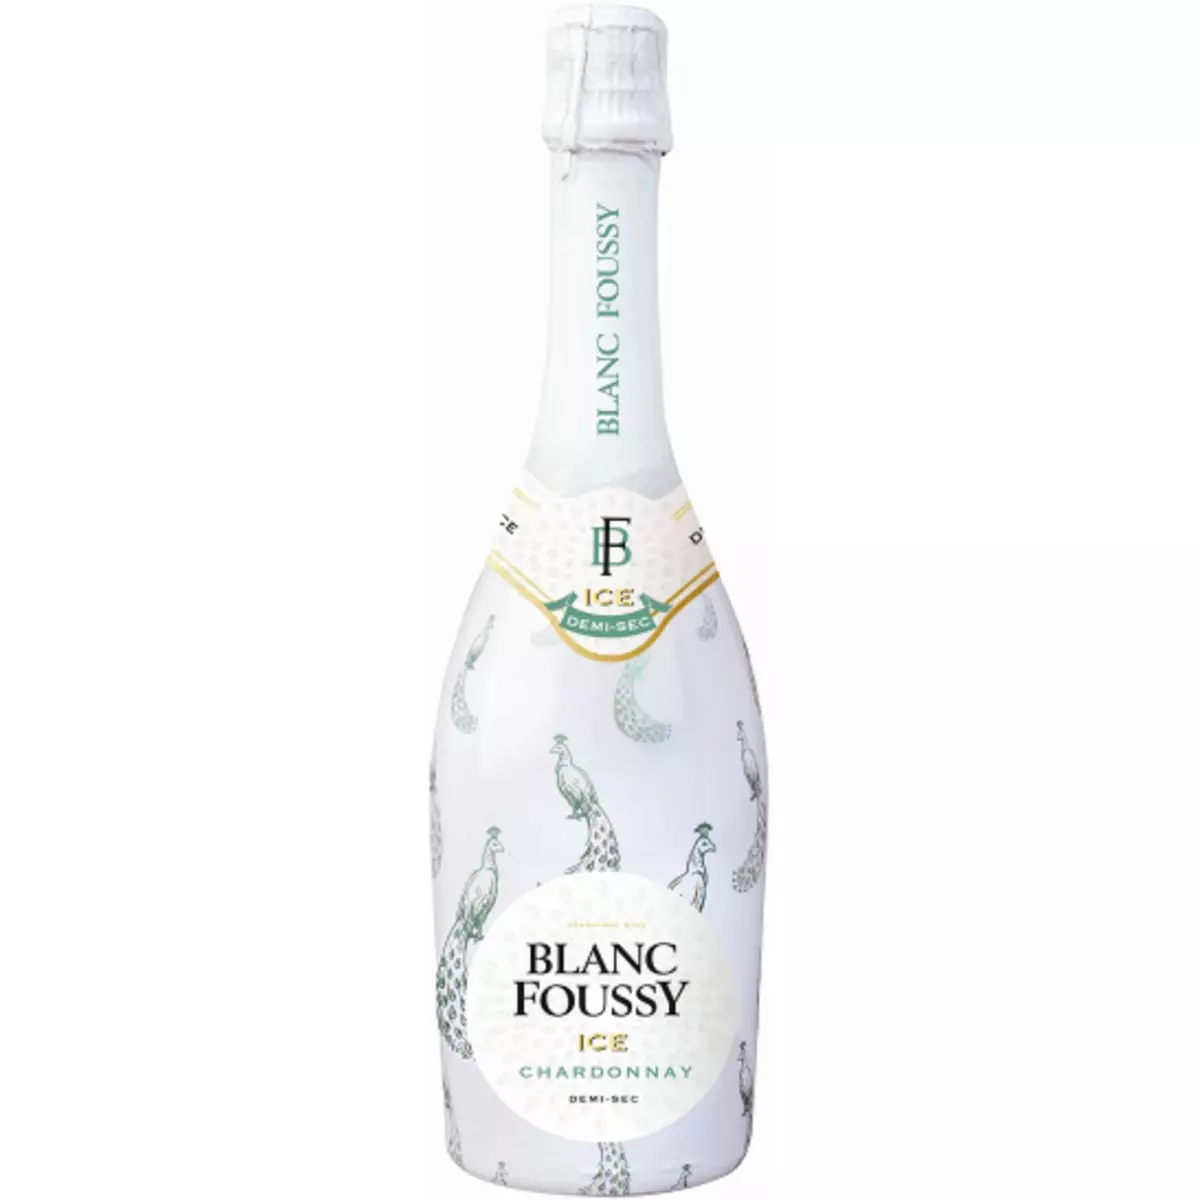 BLANC FOUSSY Foussy Chardonnay Ice by blanc demi-sec 11° -75cl